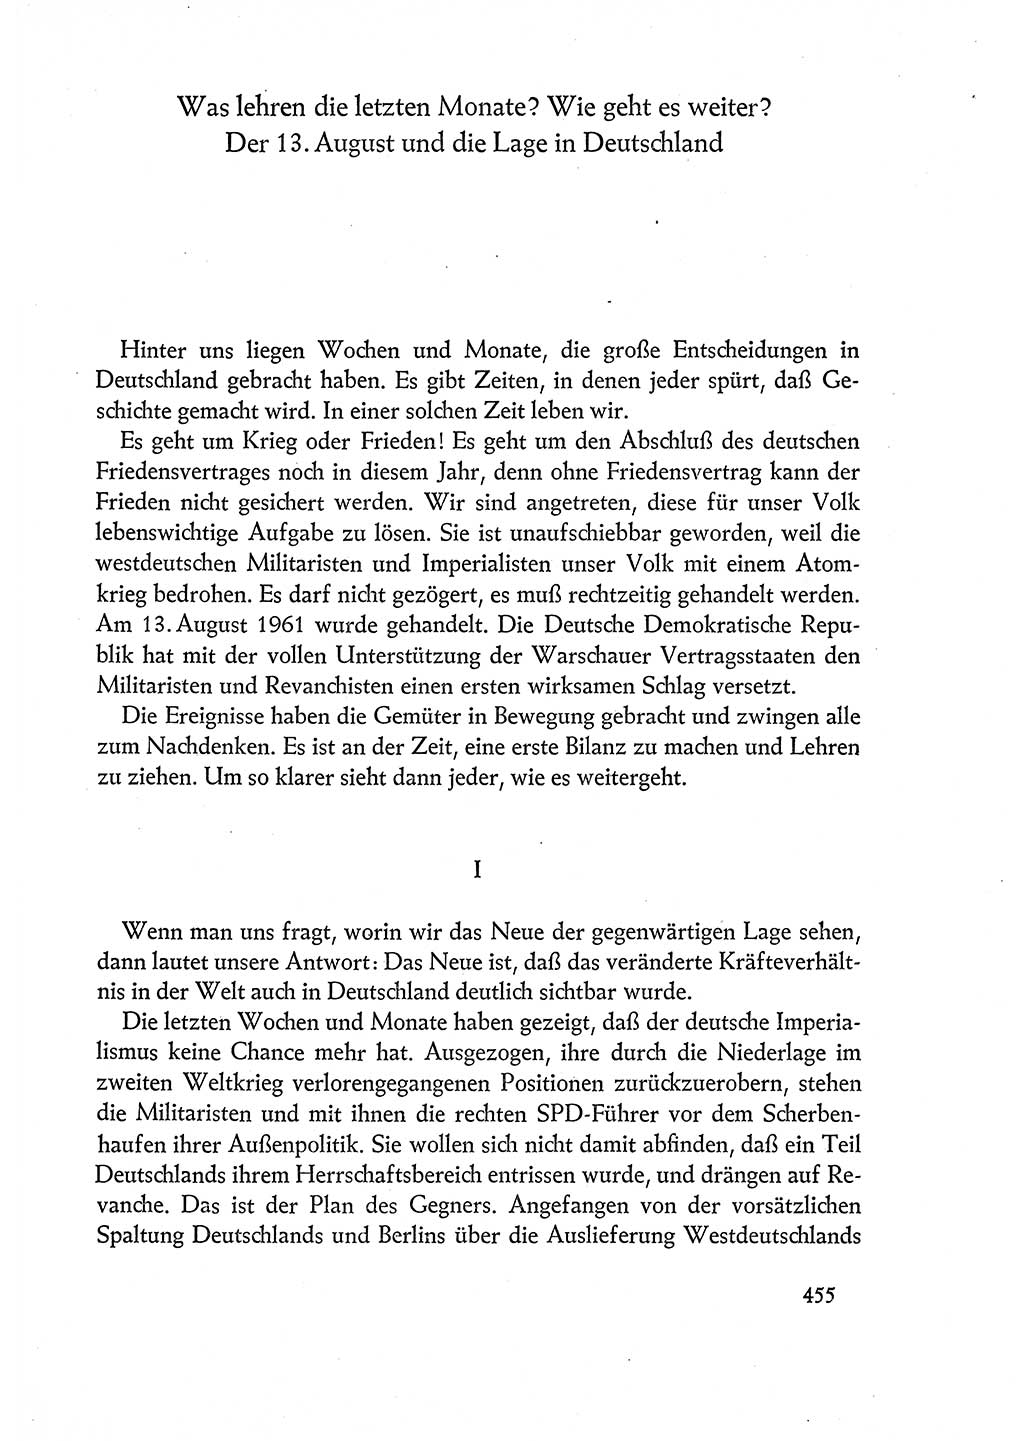 Dokumente der Sozialistischen Einheitspartei Deutschlands (SED) [Deutsche Demokratische Republik (DDR)] 1960-1961, Seite 455 (Dok. SED DDR 1960-1961, S. 455)